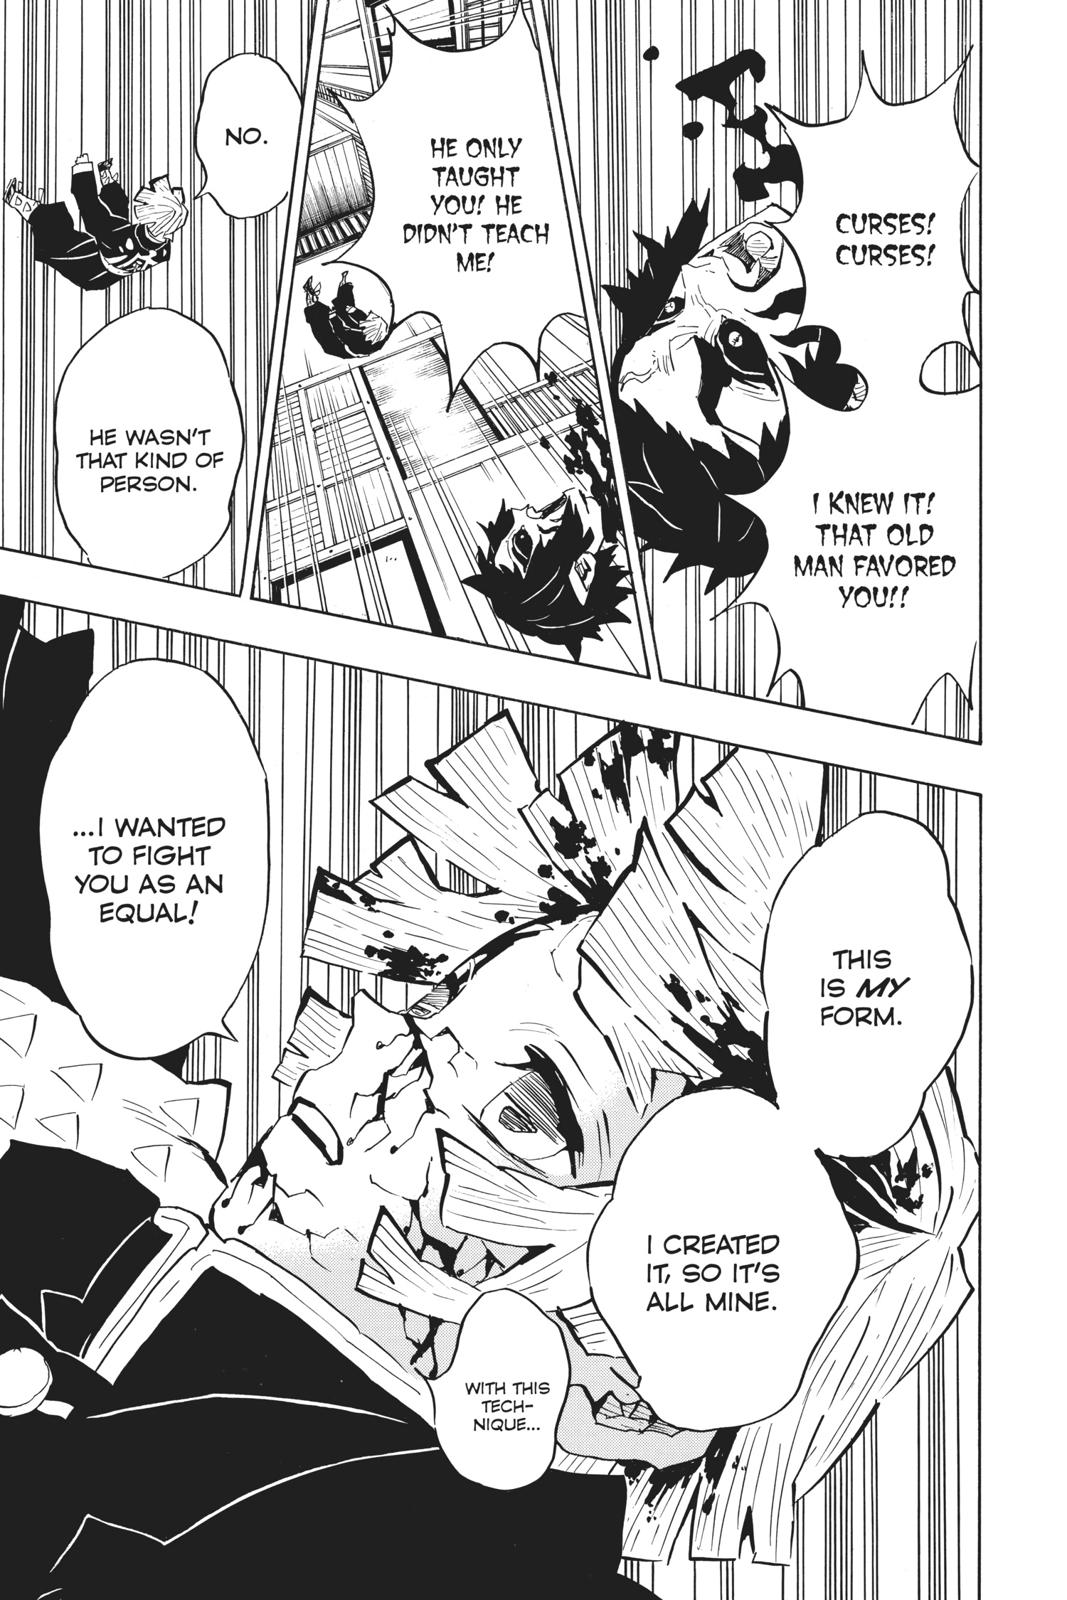 Demon Slayer Manga Manga Chapter - 145 - image 12